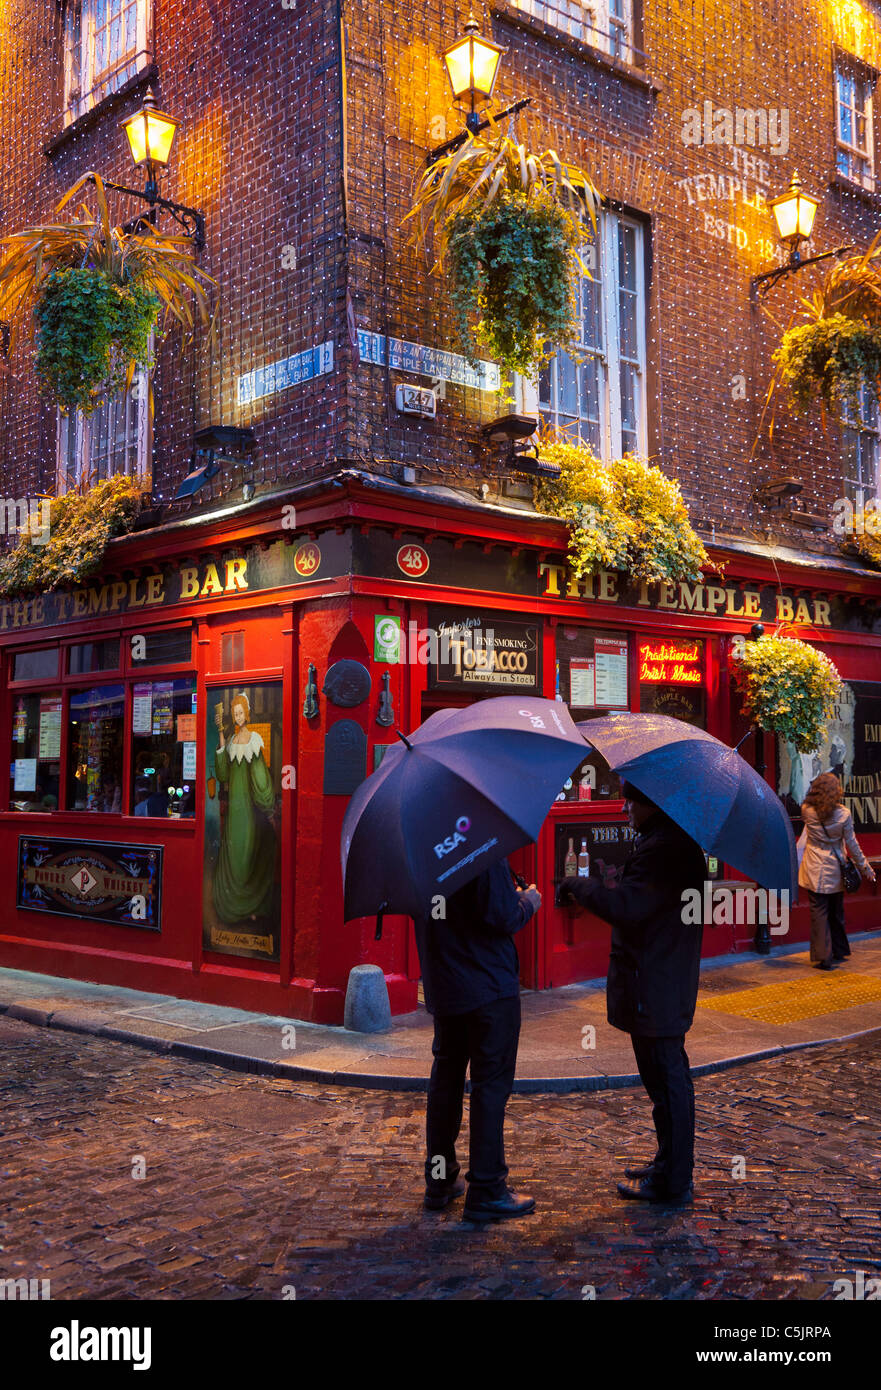 Pub de Temple Bar en Dublín, Irlanda Foto de stock